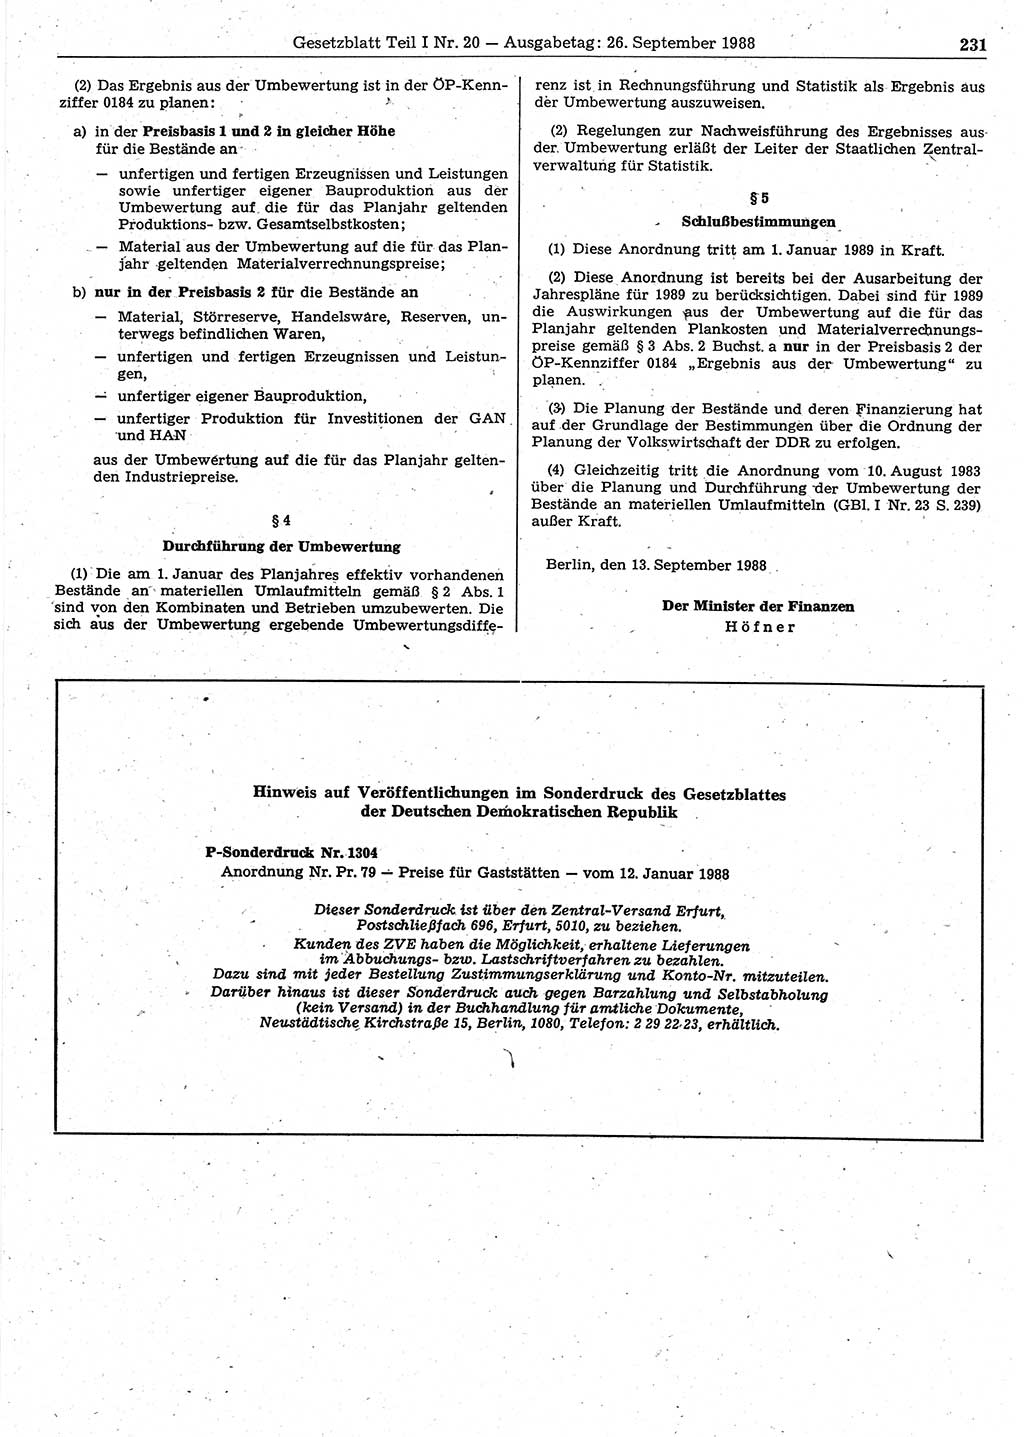 Gesetzblatt (GBl.) der Deutschen Demokratischen Republik (DDR) Teil Ⅰ 1988, Seite 231 (GBl. DDR Ⅰ 1988, S. 231)